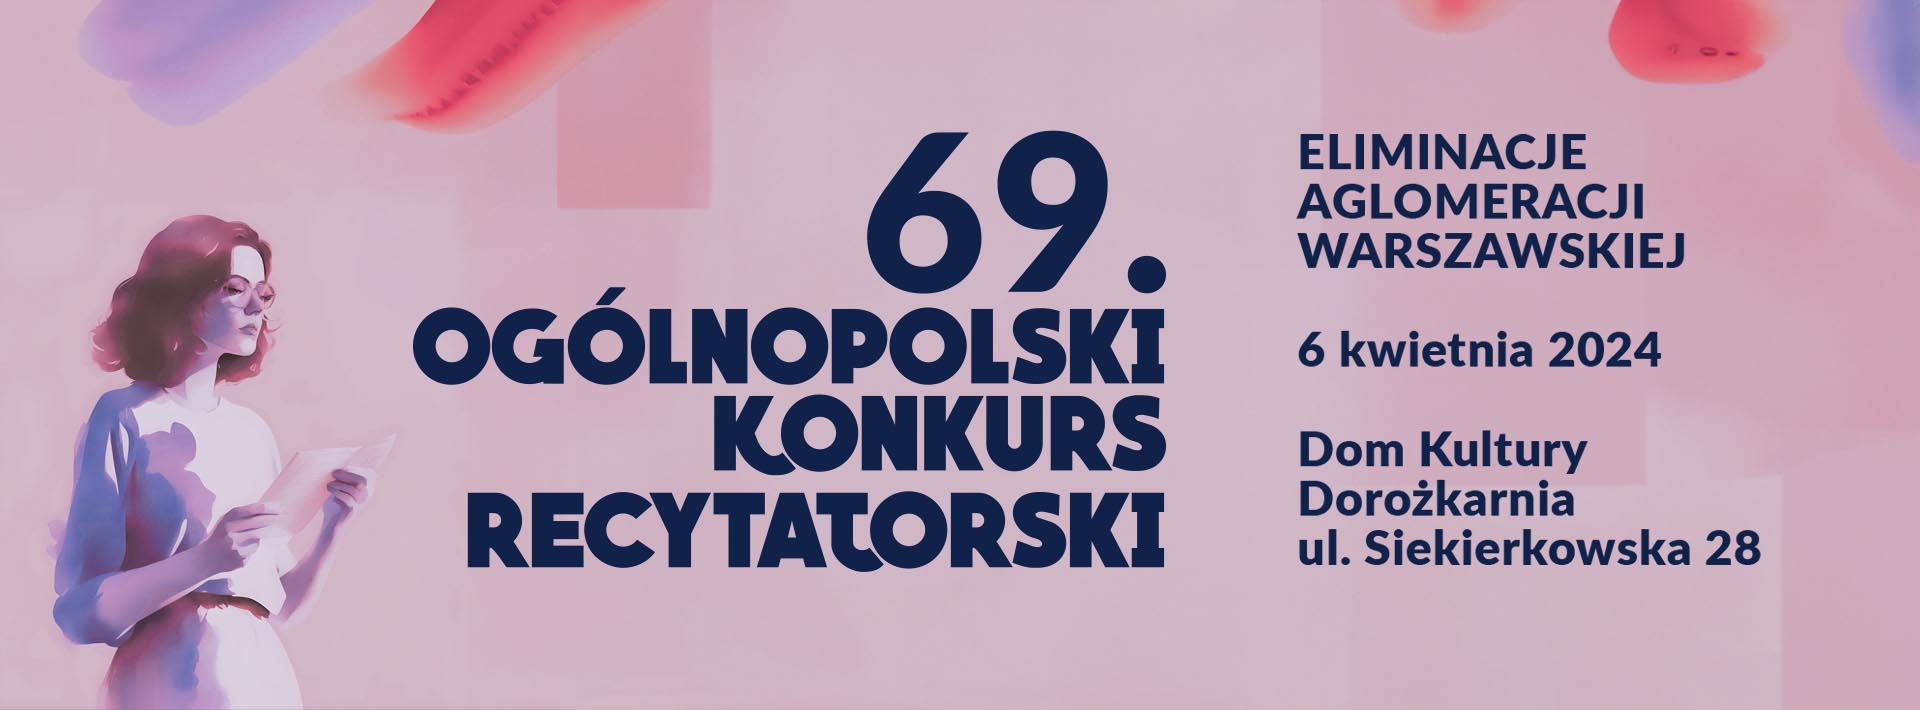 Grafika projektu 60. Ogólnopolski Konkurs Recytatorski - z lewej strony rysunek dziewczyny w okularach z kartką w dłoni, z prawej strony informacje